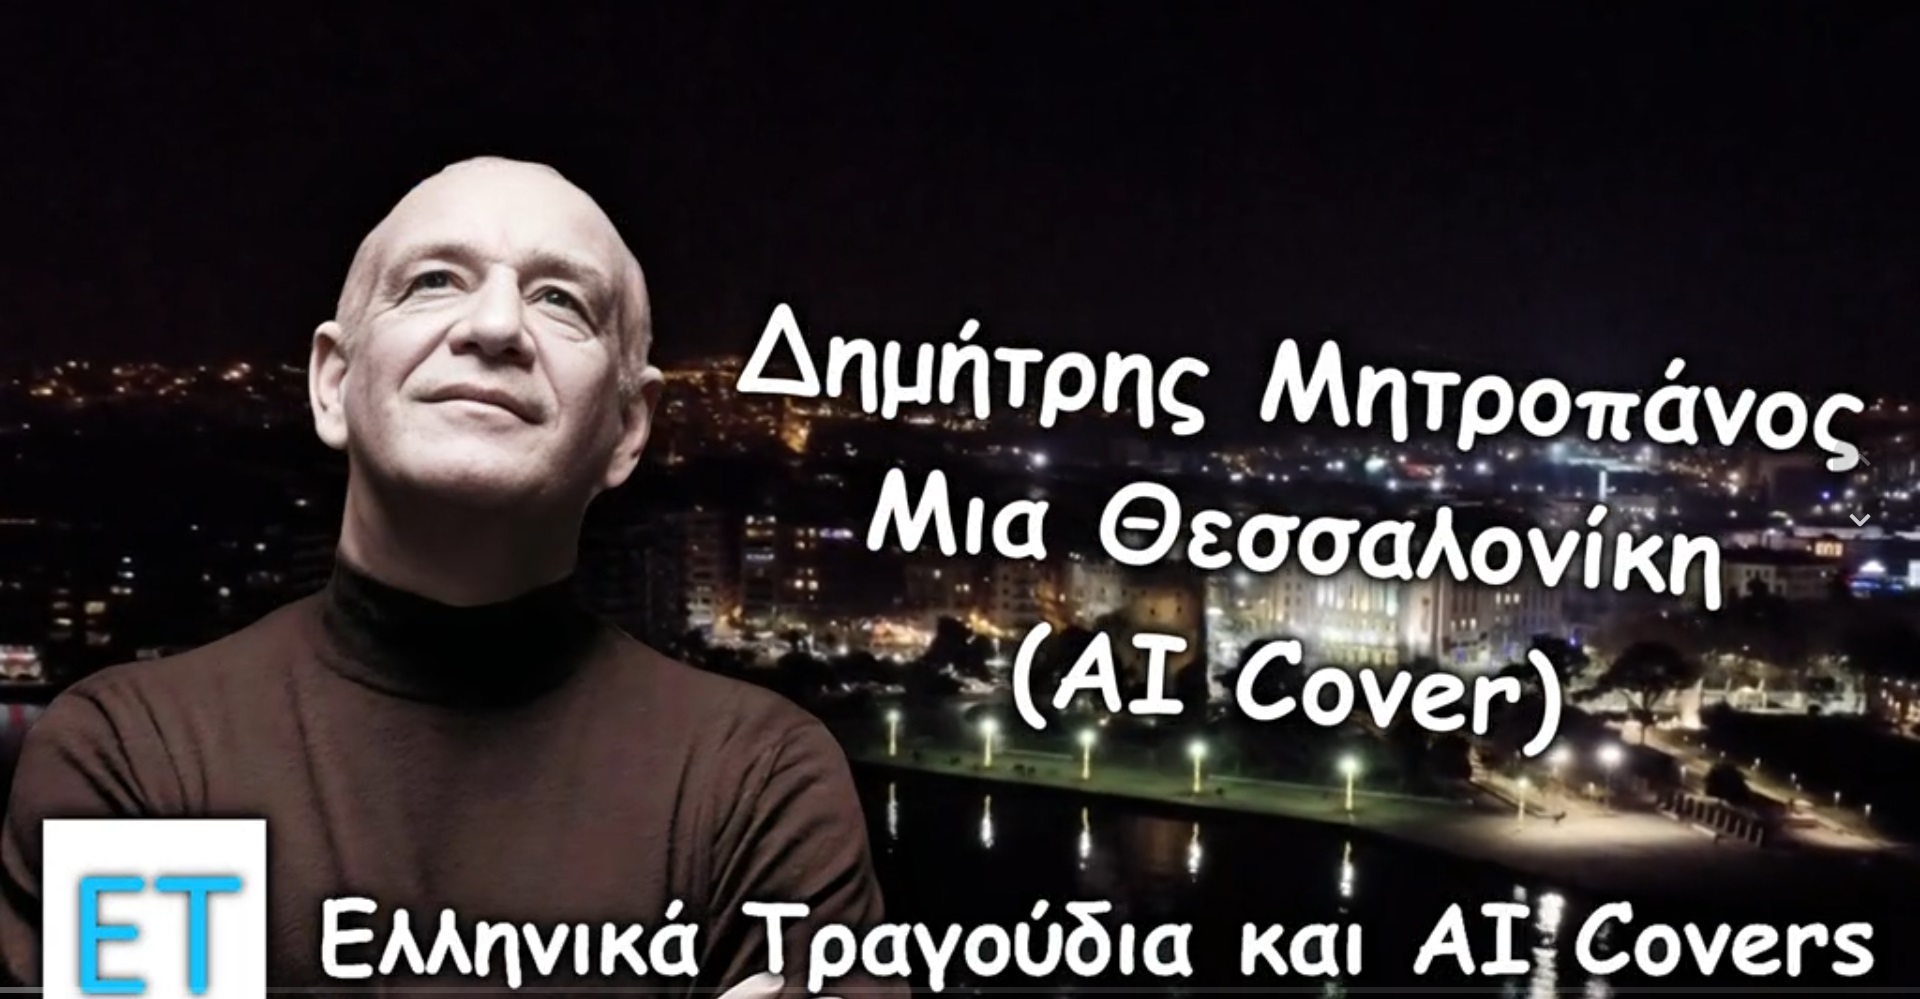 Ο Μητροπάνος "τραγούδησε" και πάλι για την αγαπημένη του Θεσσαλονίκη (ΒΙΝΤΕΟ)